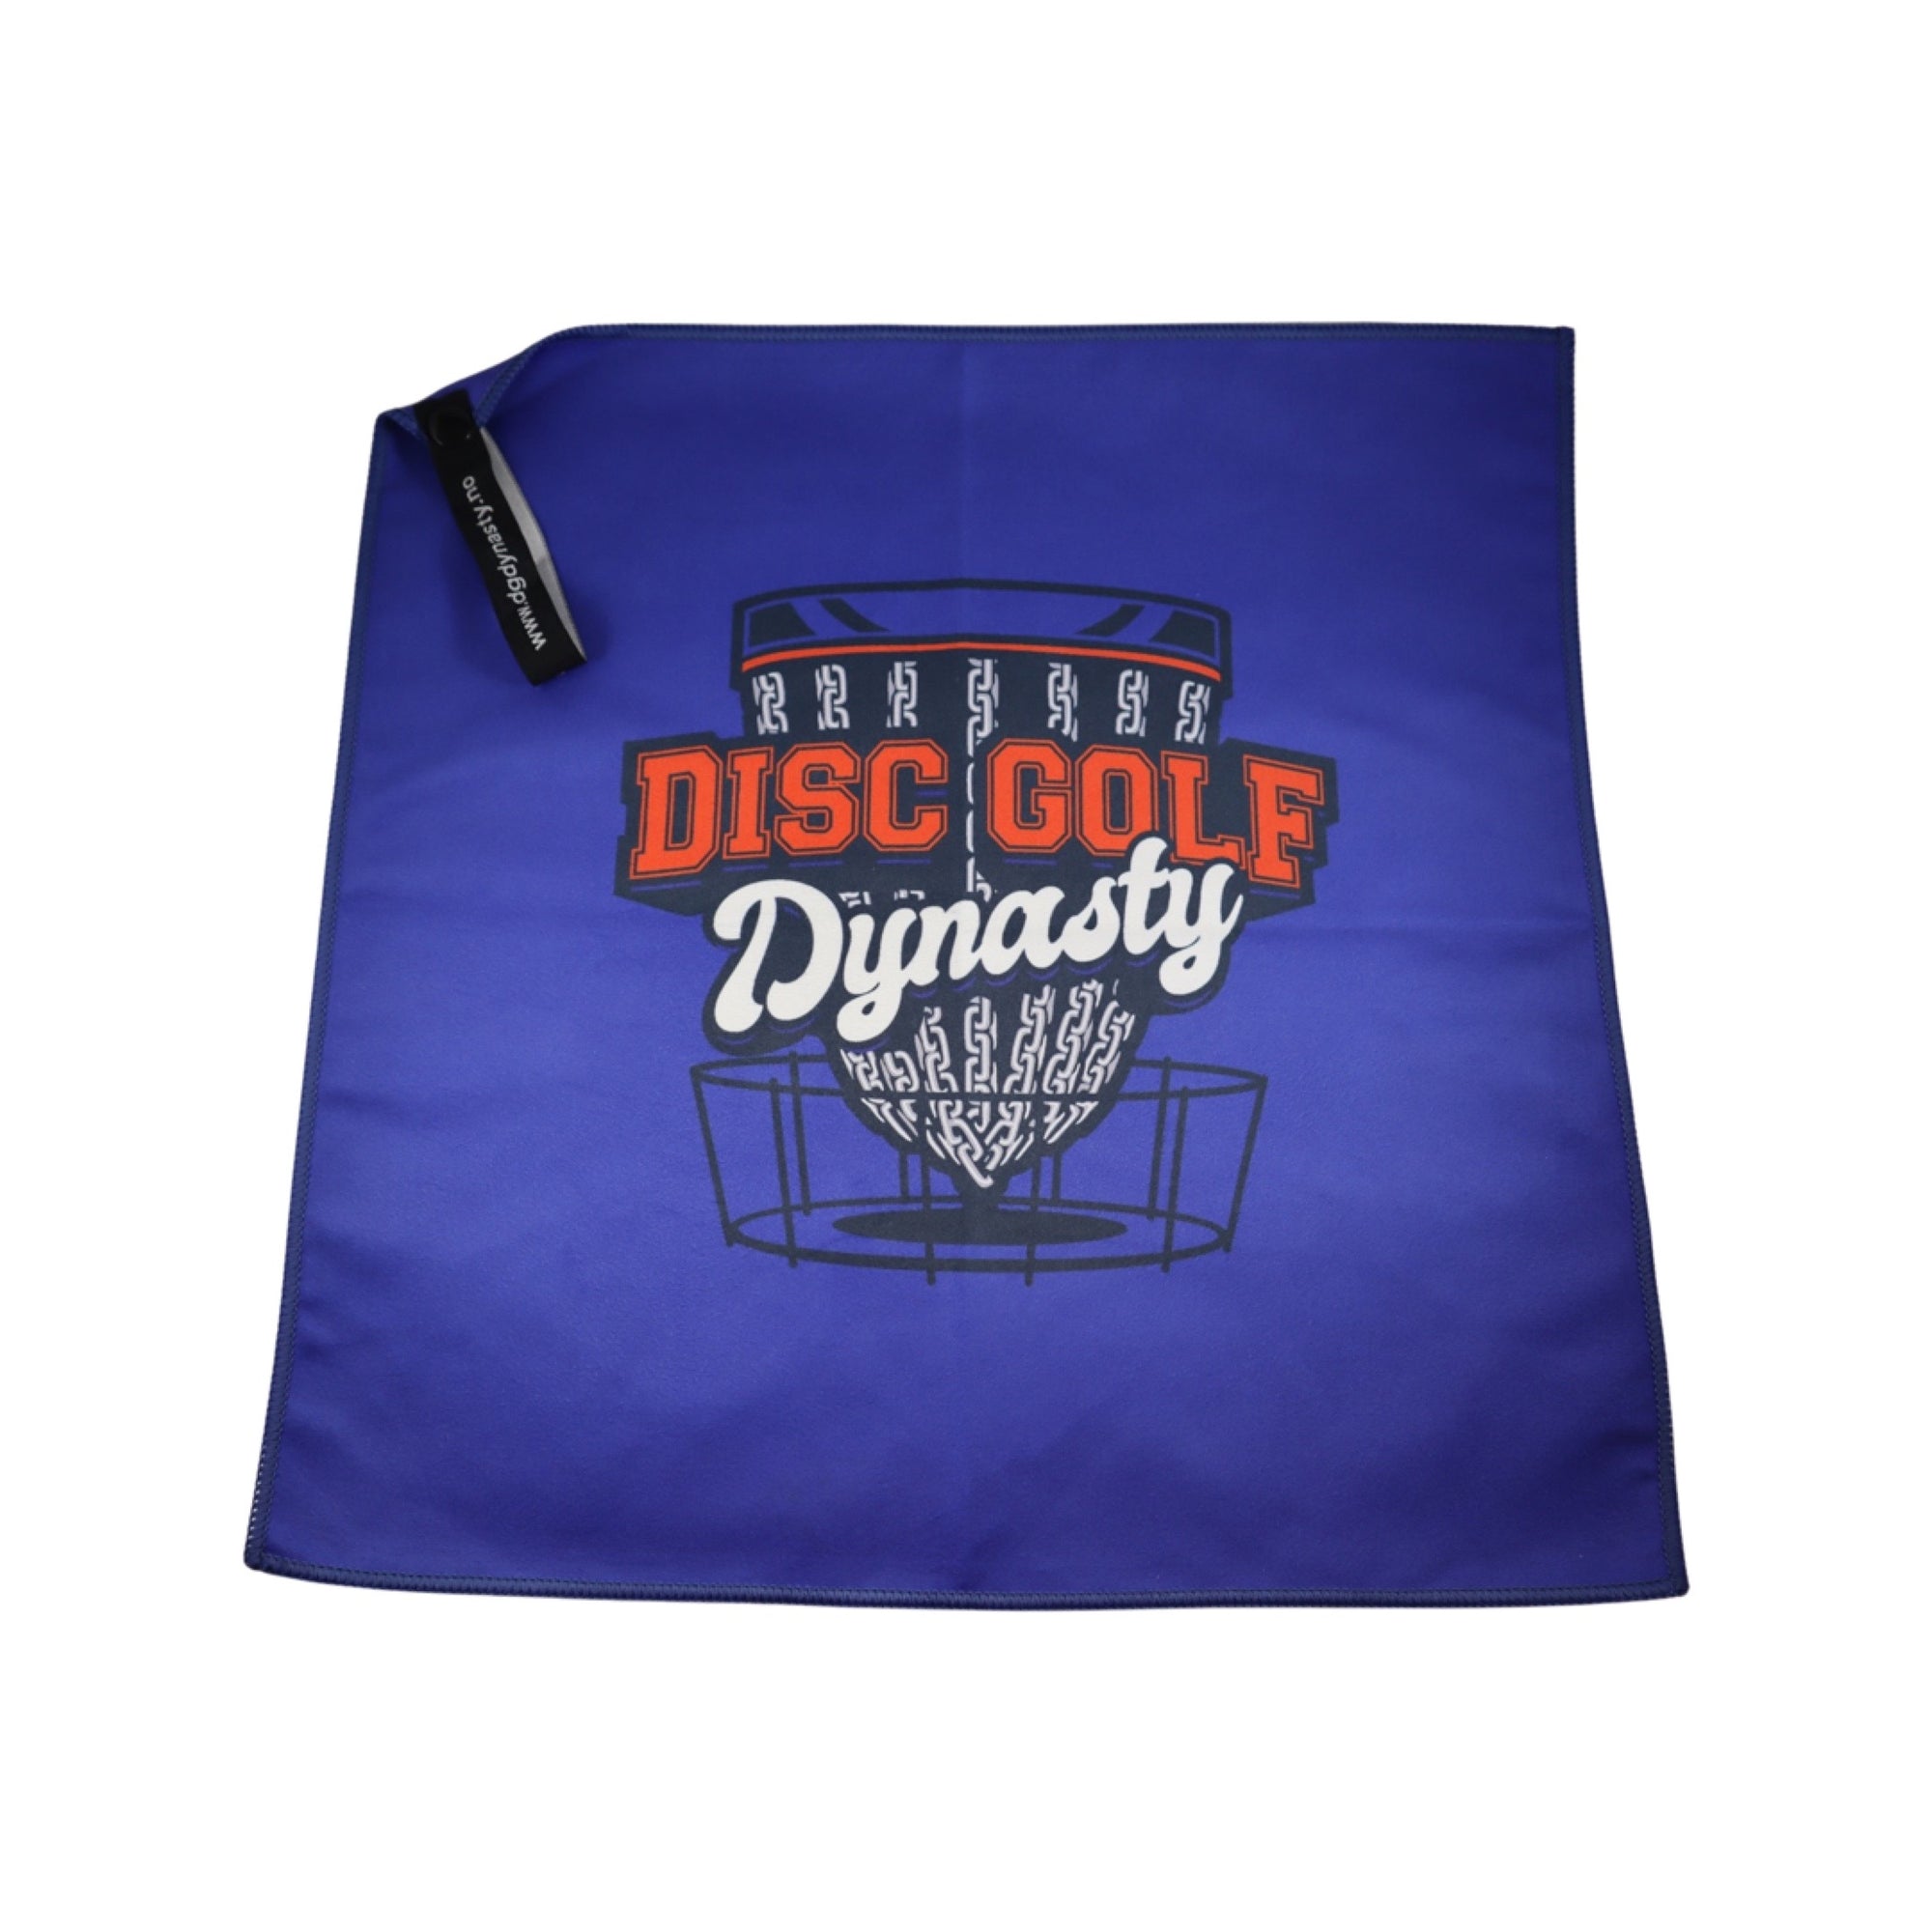 Disc Golf Dynasty Håndkle